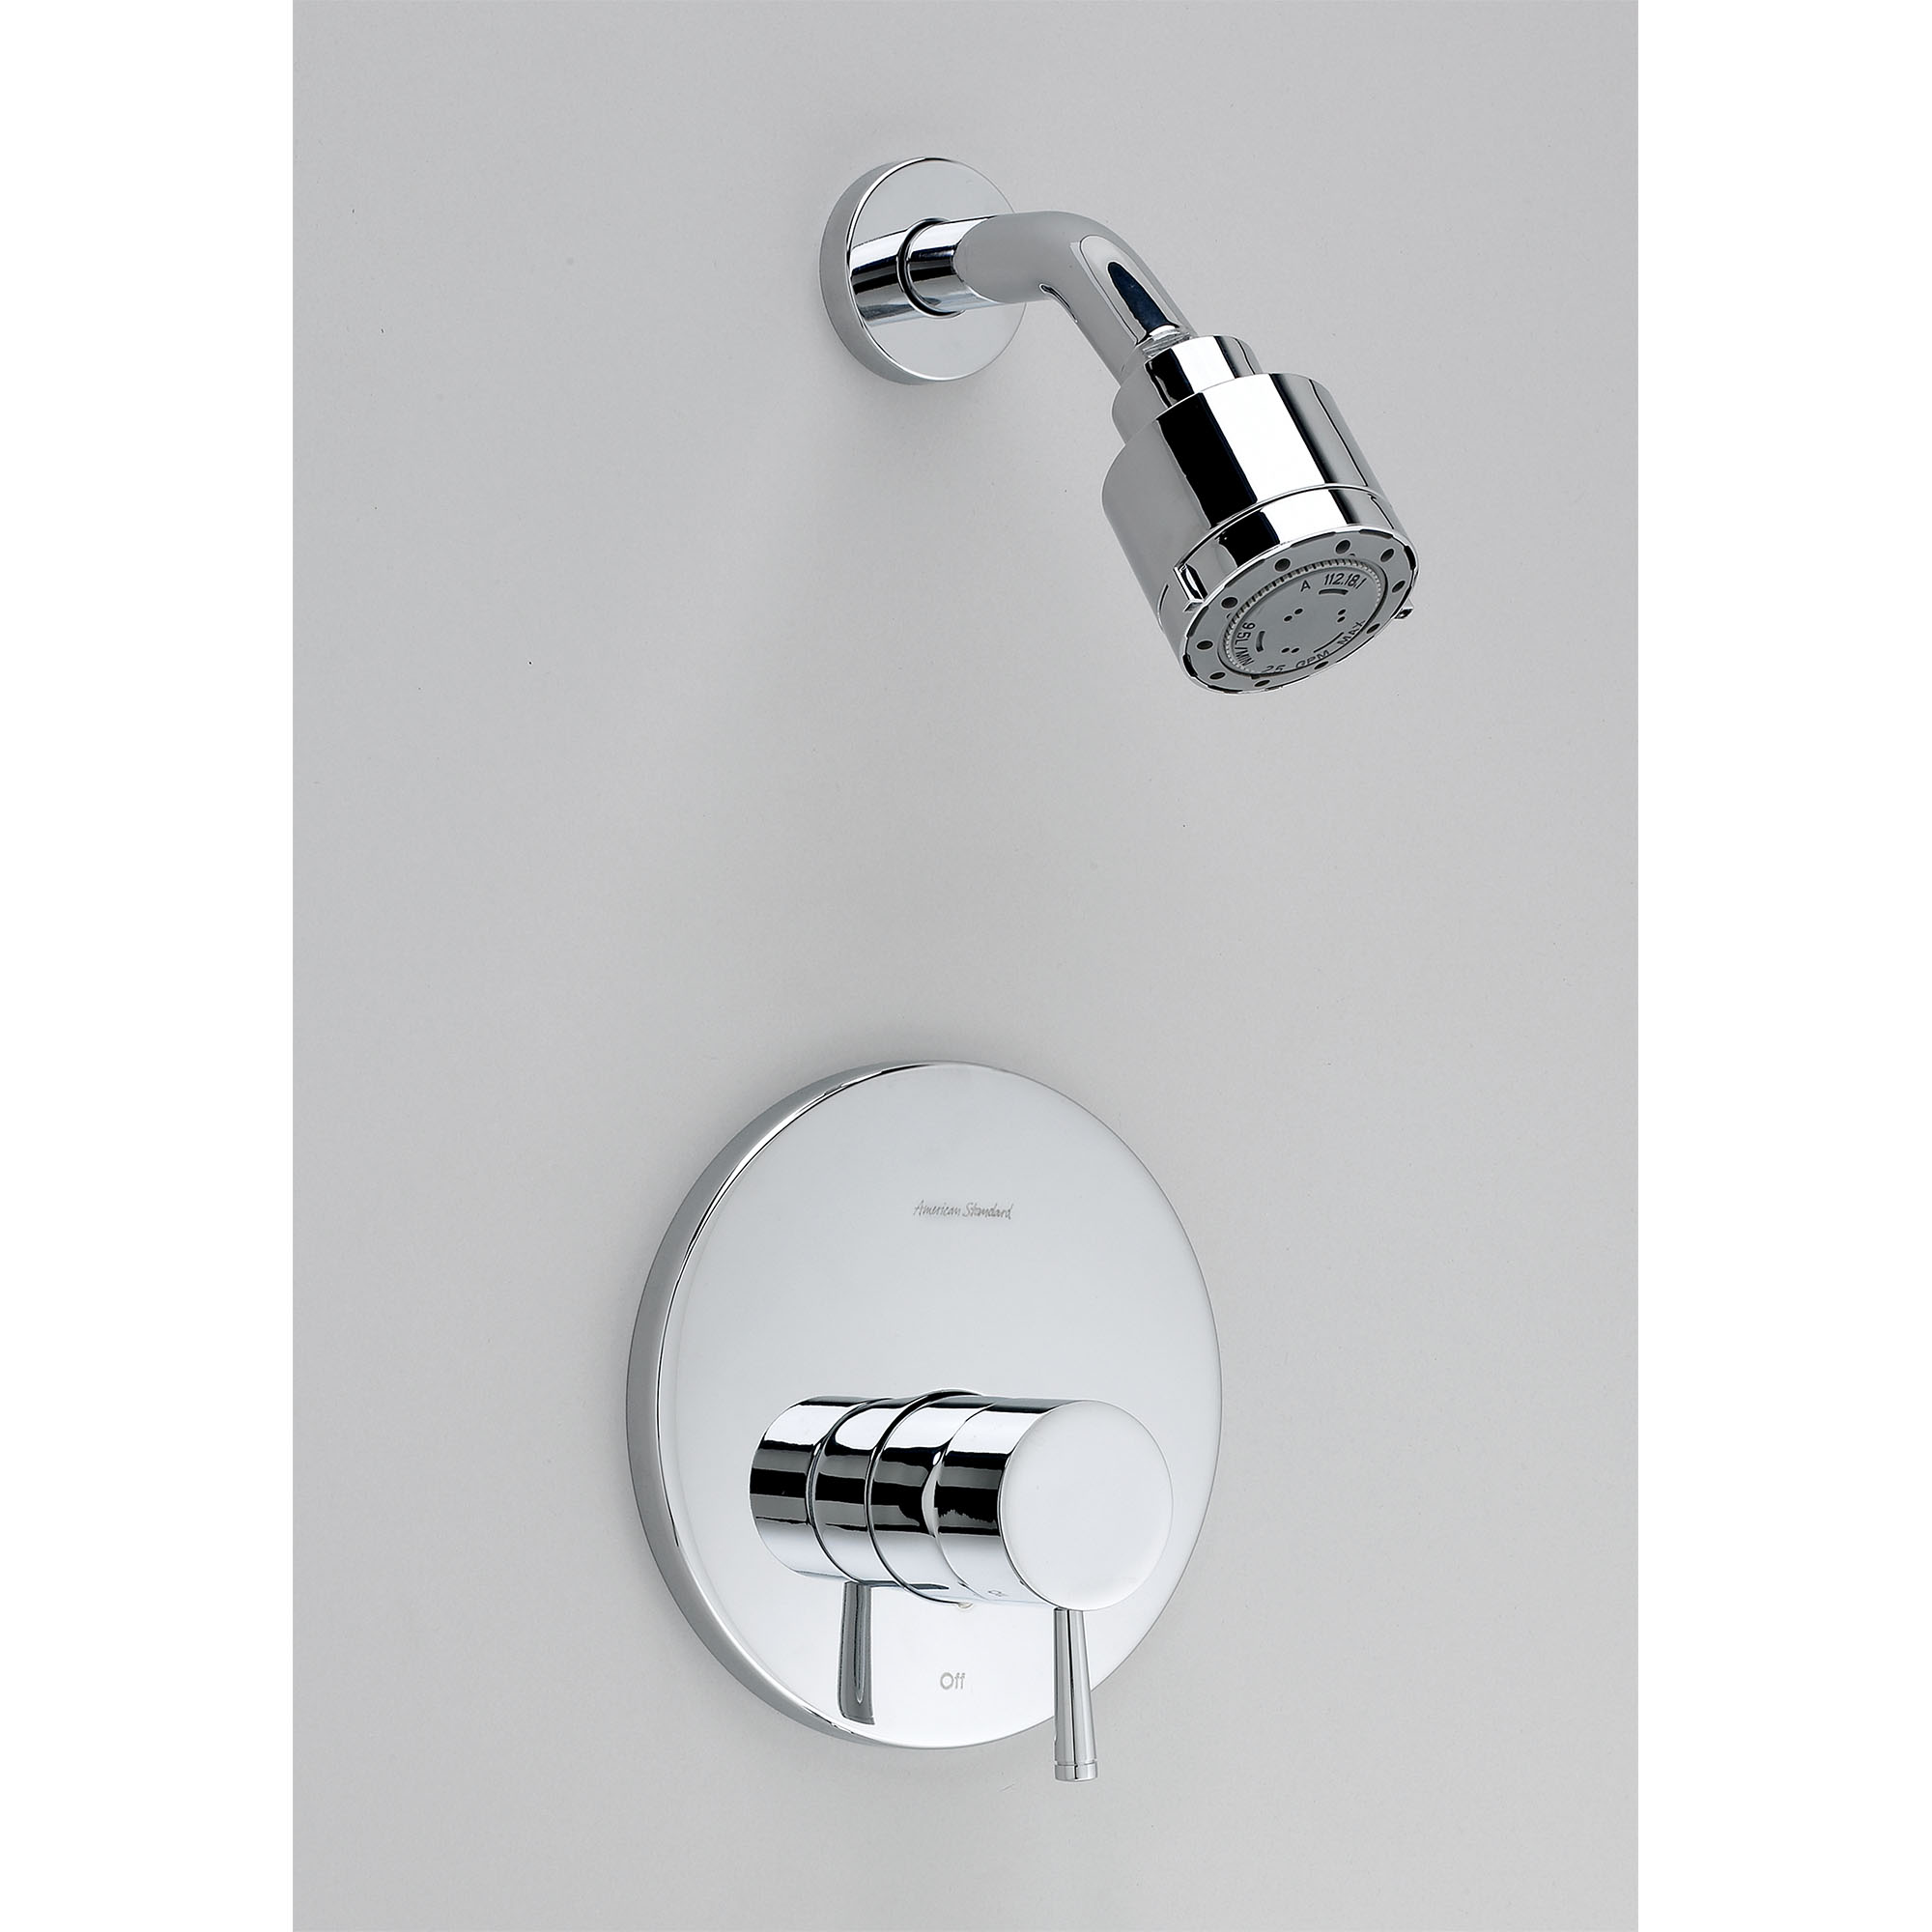 Serin MC 2.5 gpm/9.5 L/min Garniture de douche avec ommeau de douche à 3 fonctions, cartouche à double équilibre de pression en céramiqueavec poignée à levier